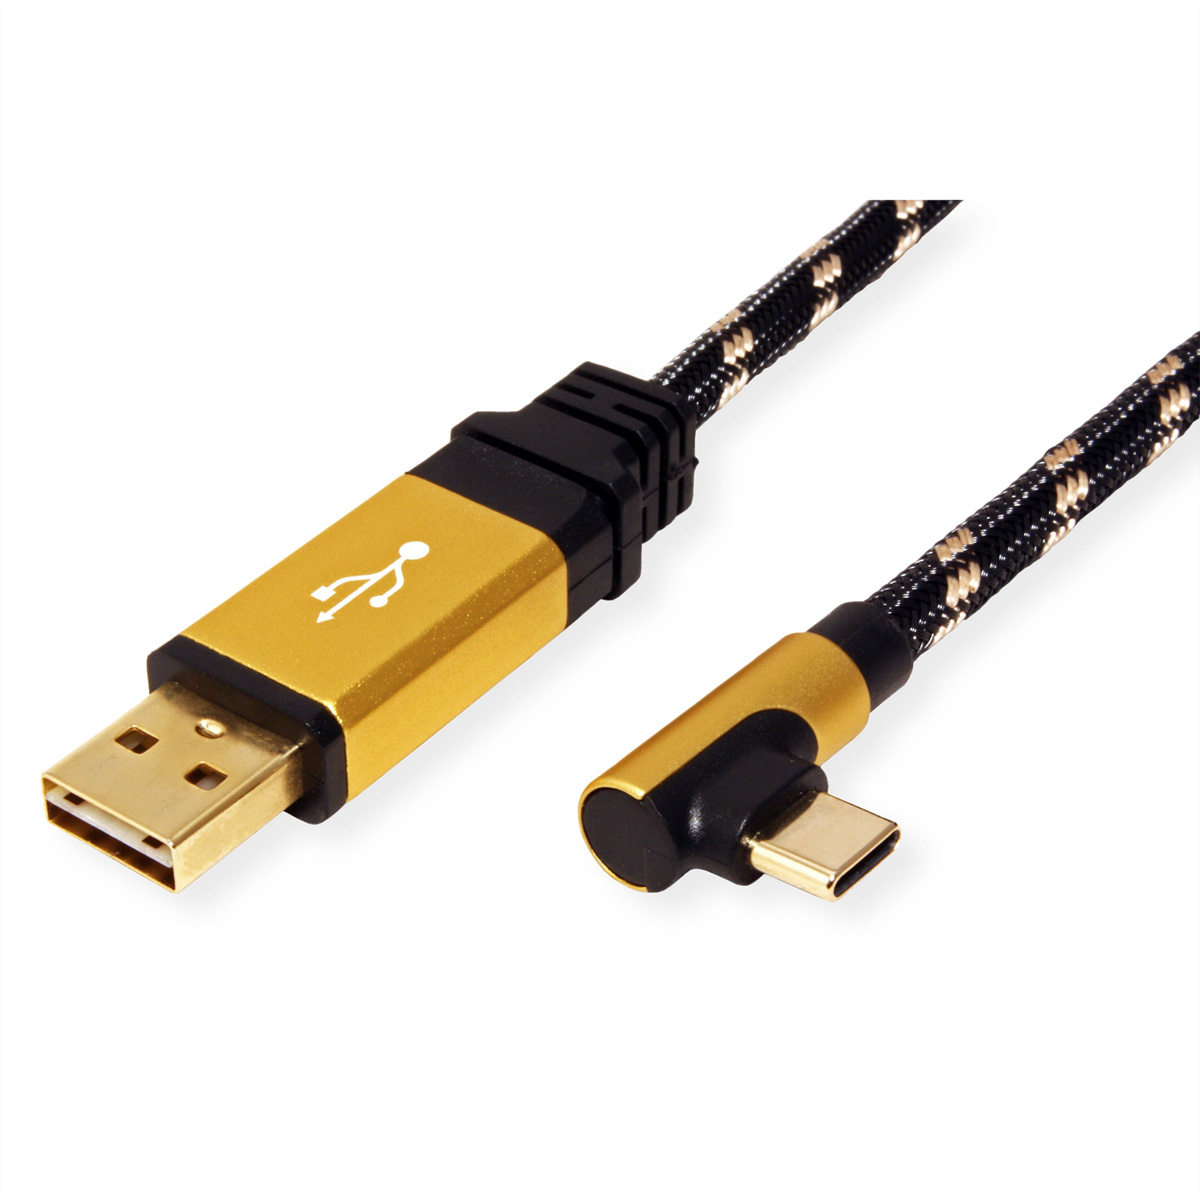 ROLINE GOLD USB 2.0 2.0 ST C A reversibel USB ST USB Kabel gewinkelt USB Kabel, 